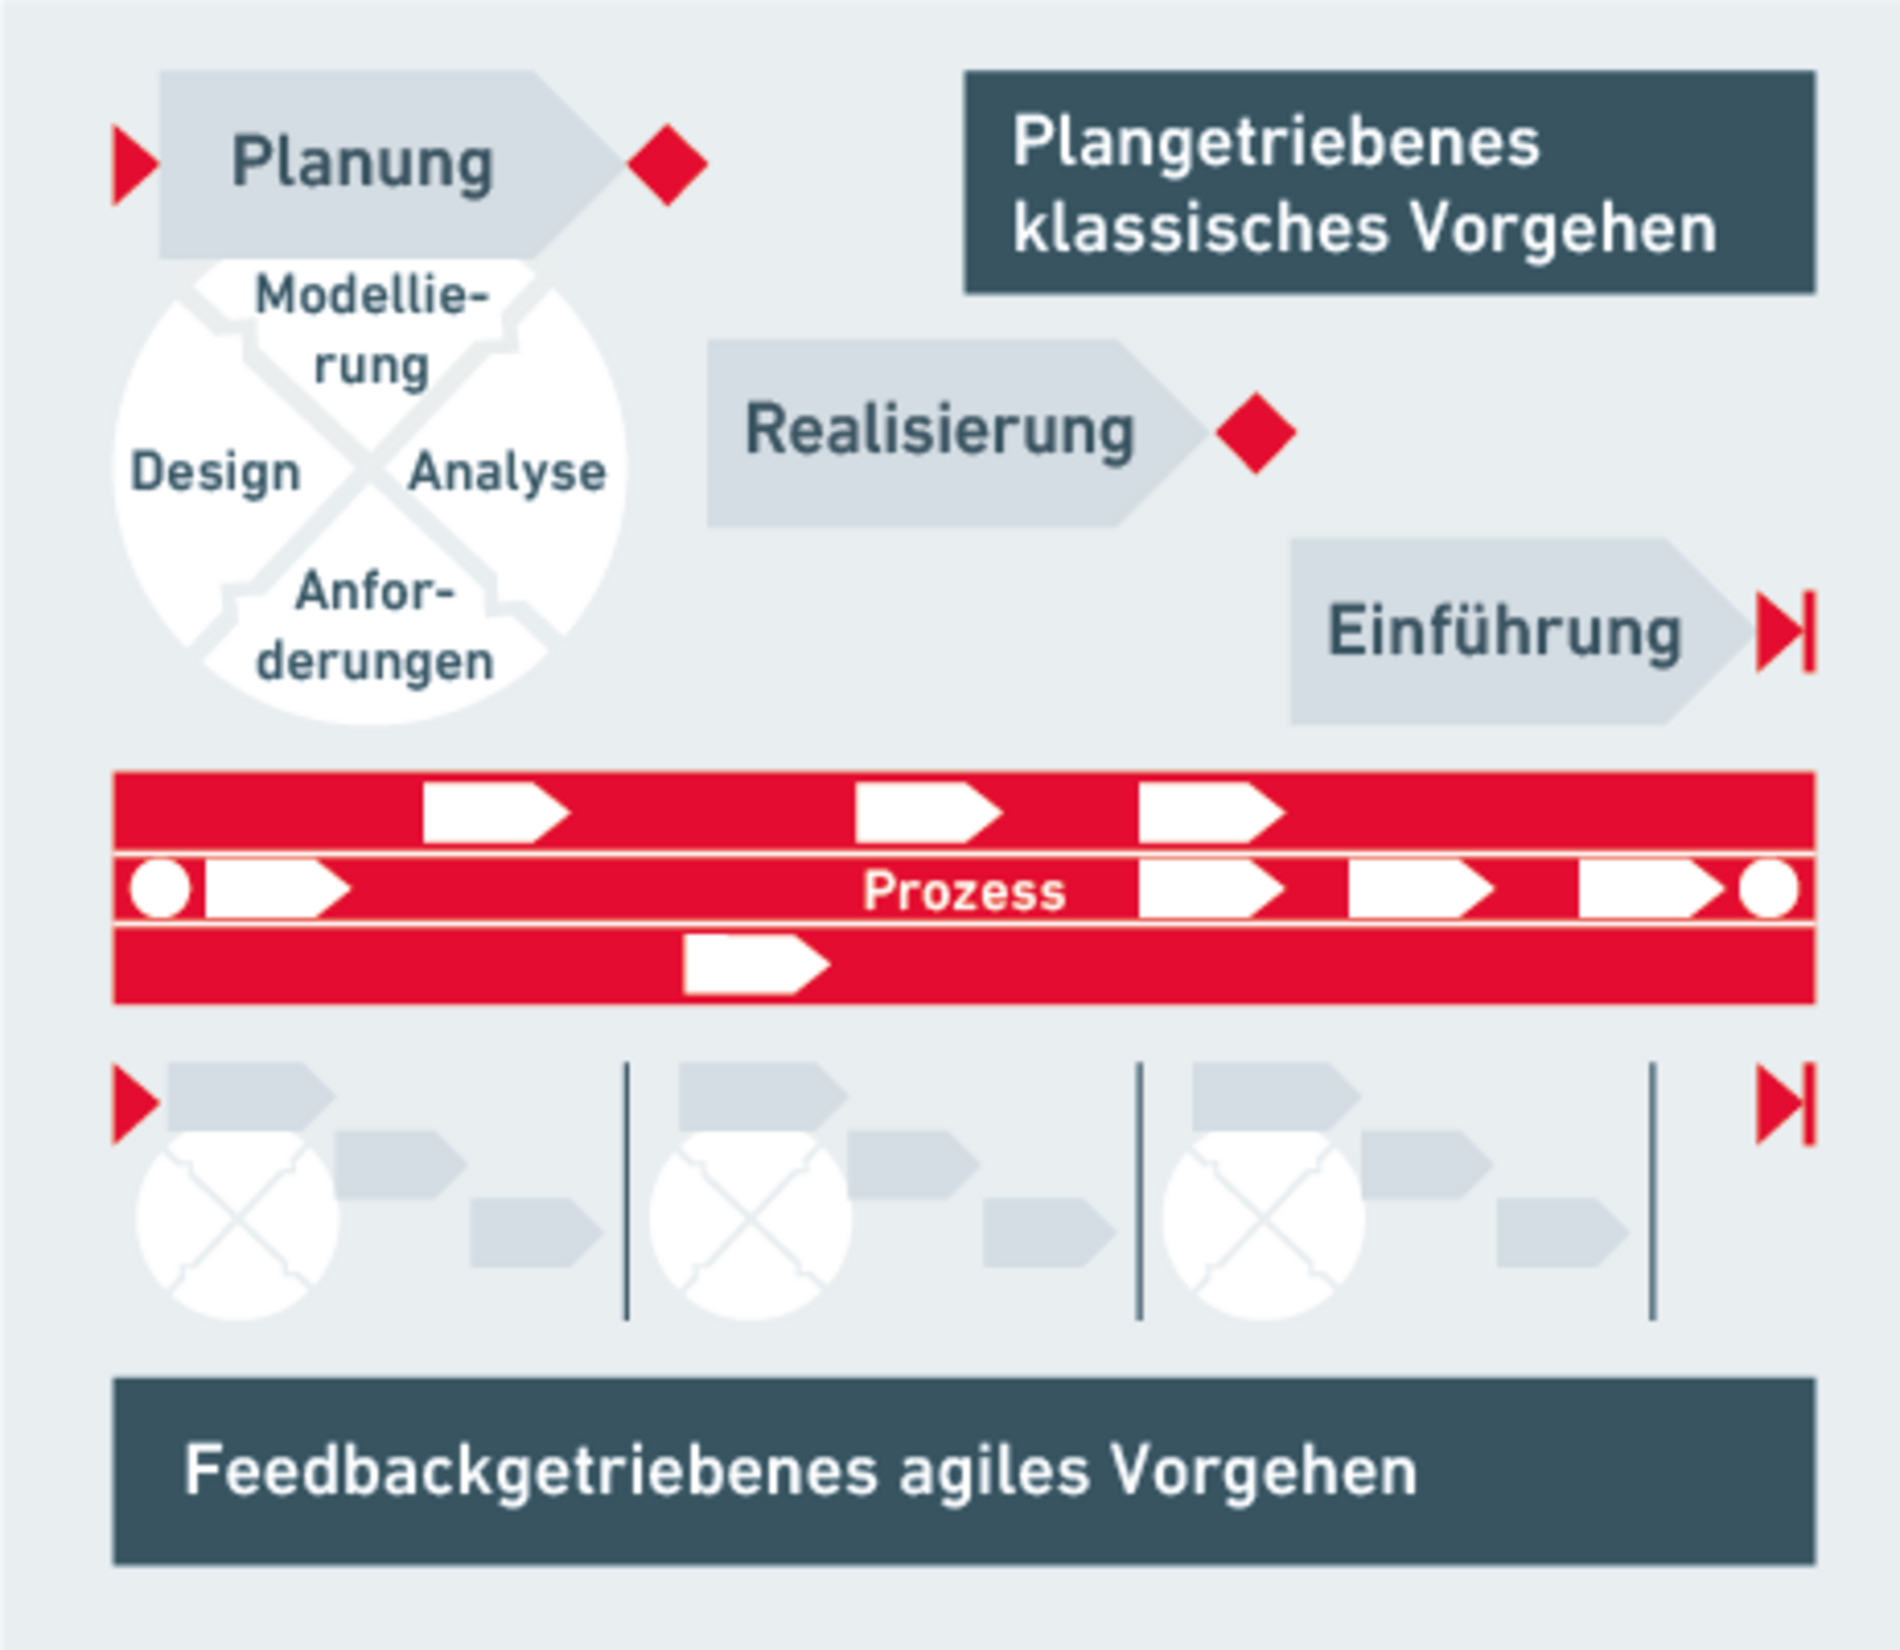 Grafik zur Prozessoptimierung: Klassisch plangetriebenes Vorgehen und Agiles feedbackgetriebenes Vorgehen